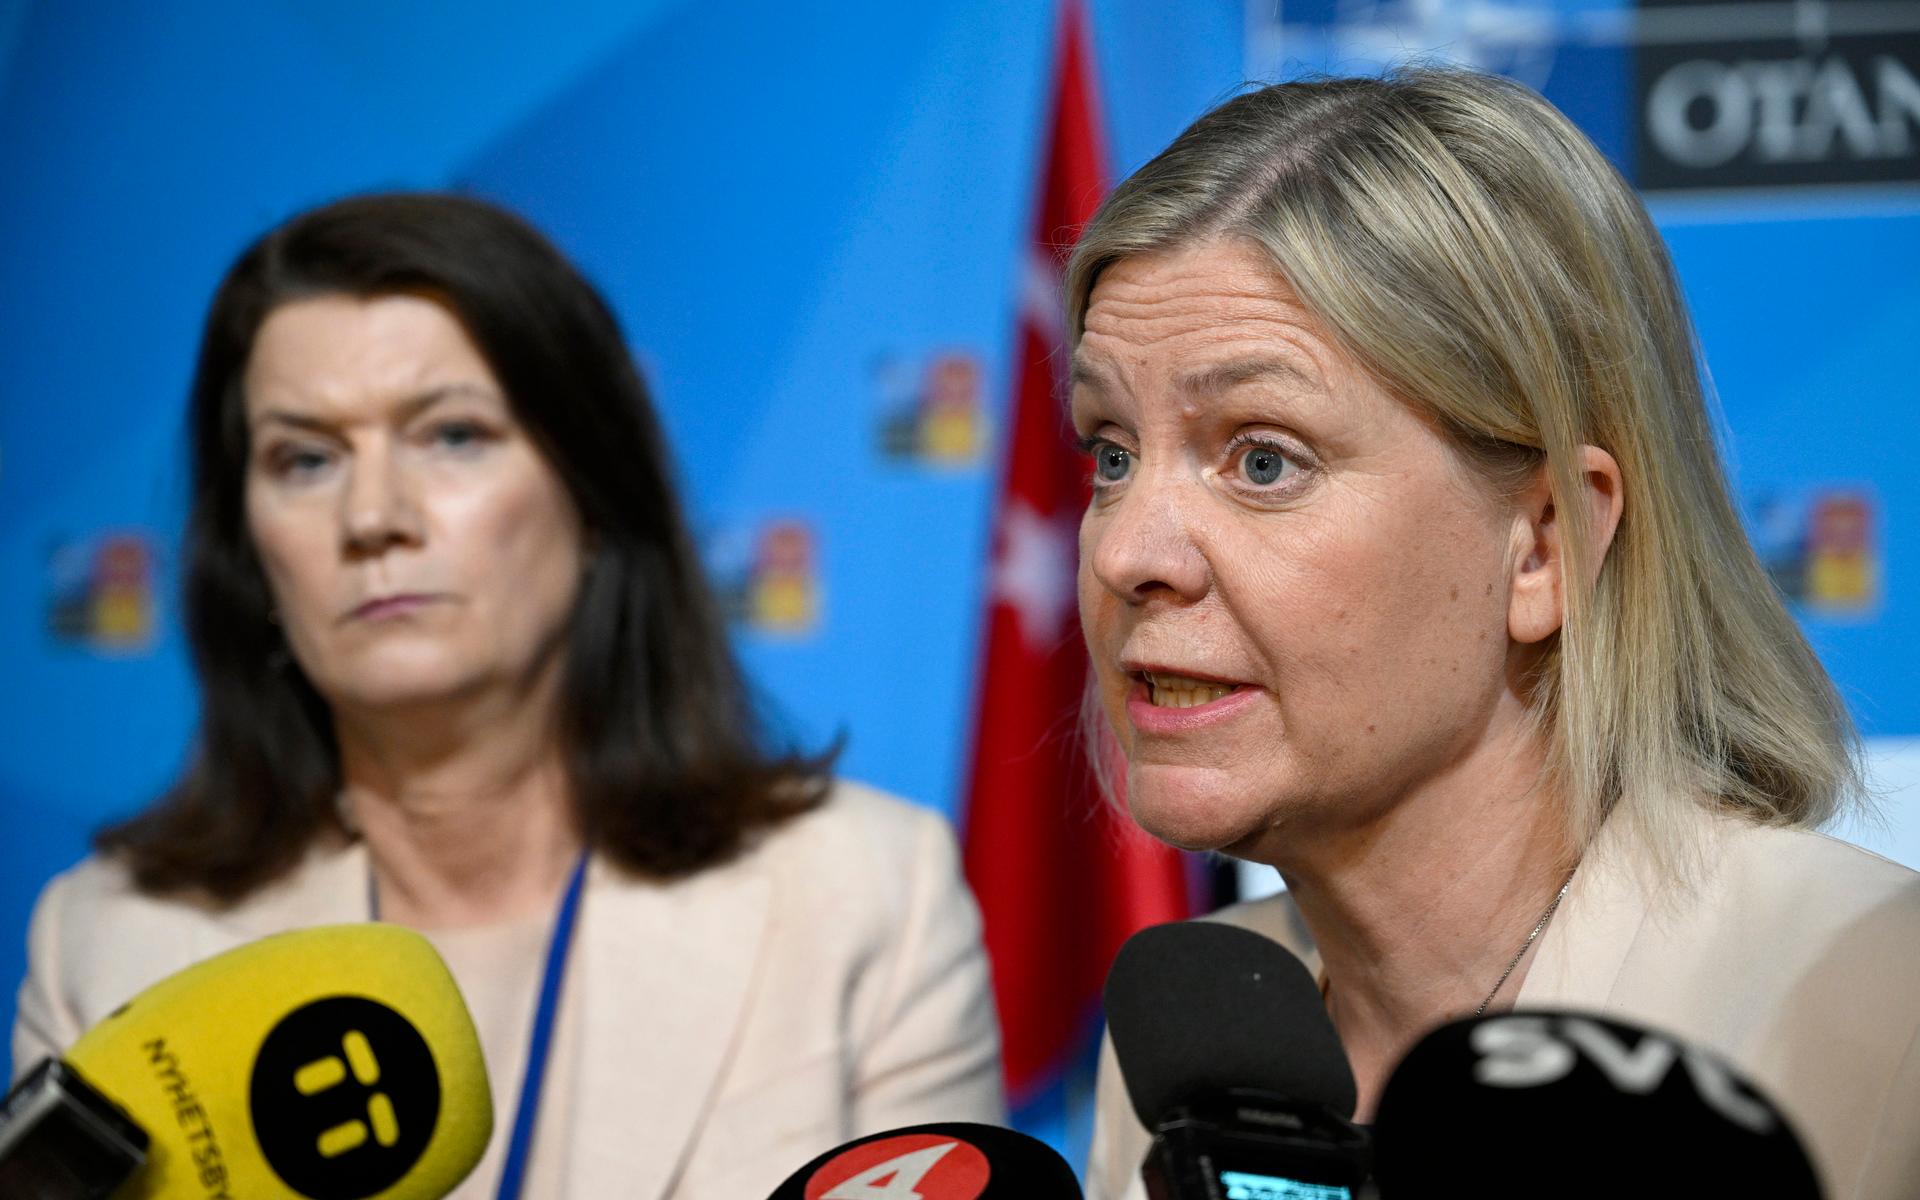 Märta Stenevi (MP) har begärt en redogörelse av avtalet med Turkiet. Statsminister Magdalena Andersson menar att skrivningarna om de kurdiska organisationerna, i avtalet med Turkiet, handlar om att Sverige inte ska stödja organisationerna på ett sådant sätt att de hotar Turkiets inre säkerhet. 